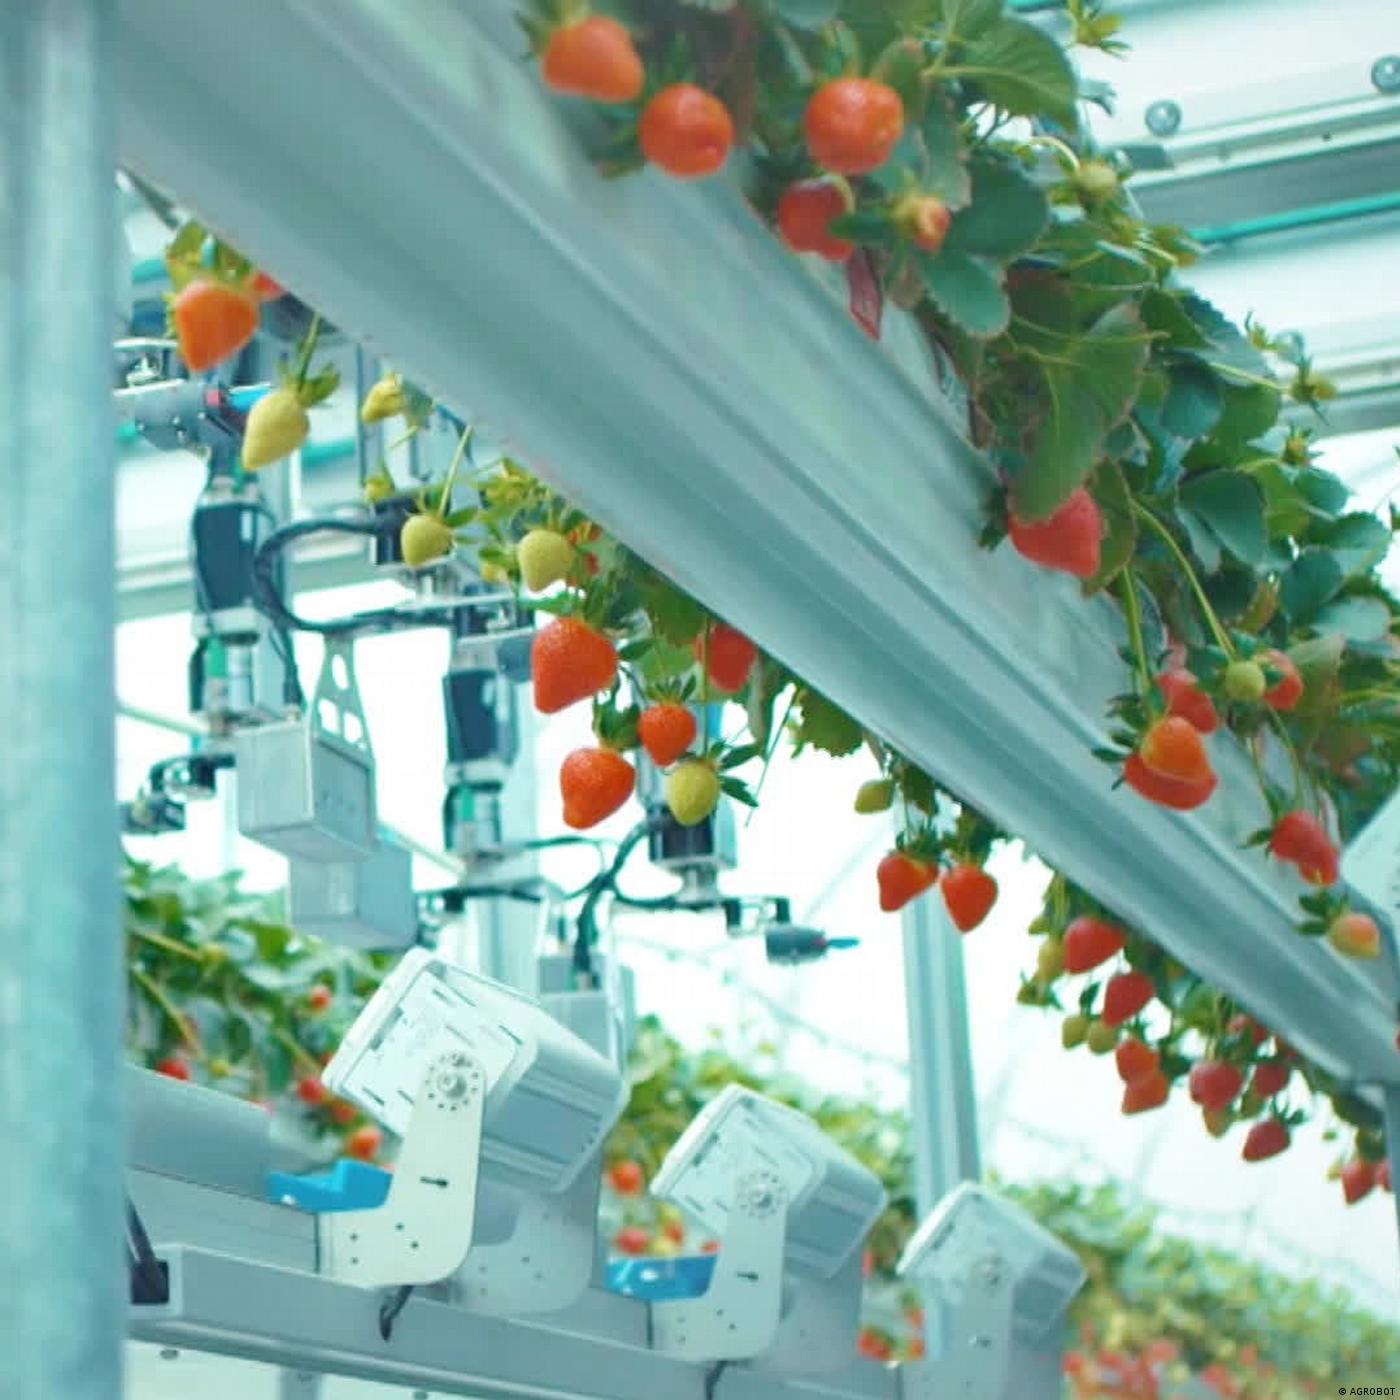 Digitale Landwirtschaft – Roboter im Ernteeinsatz